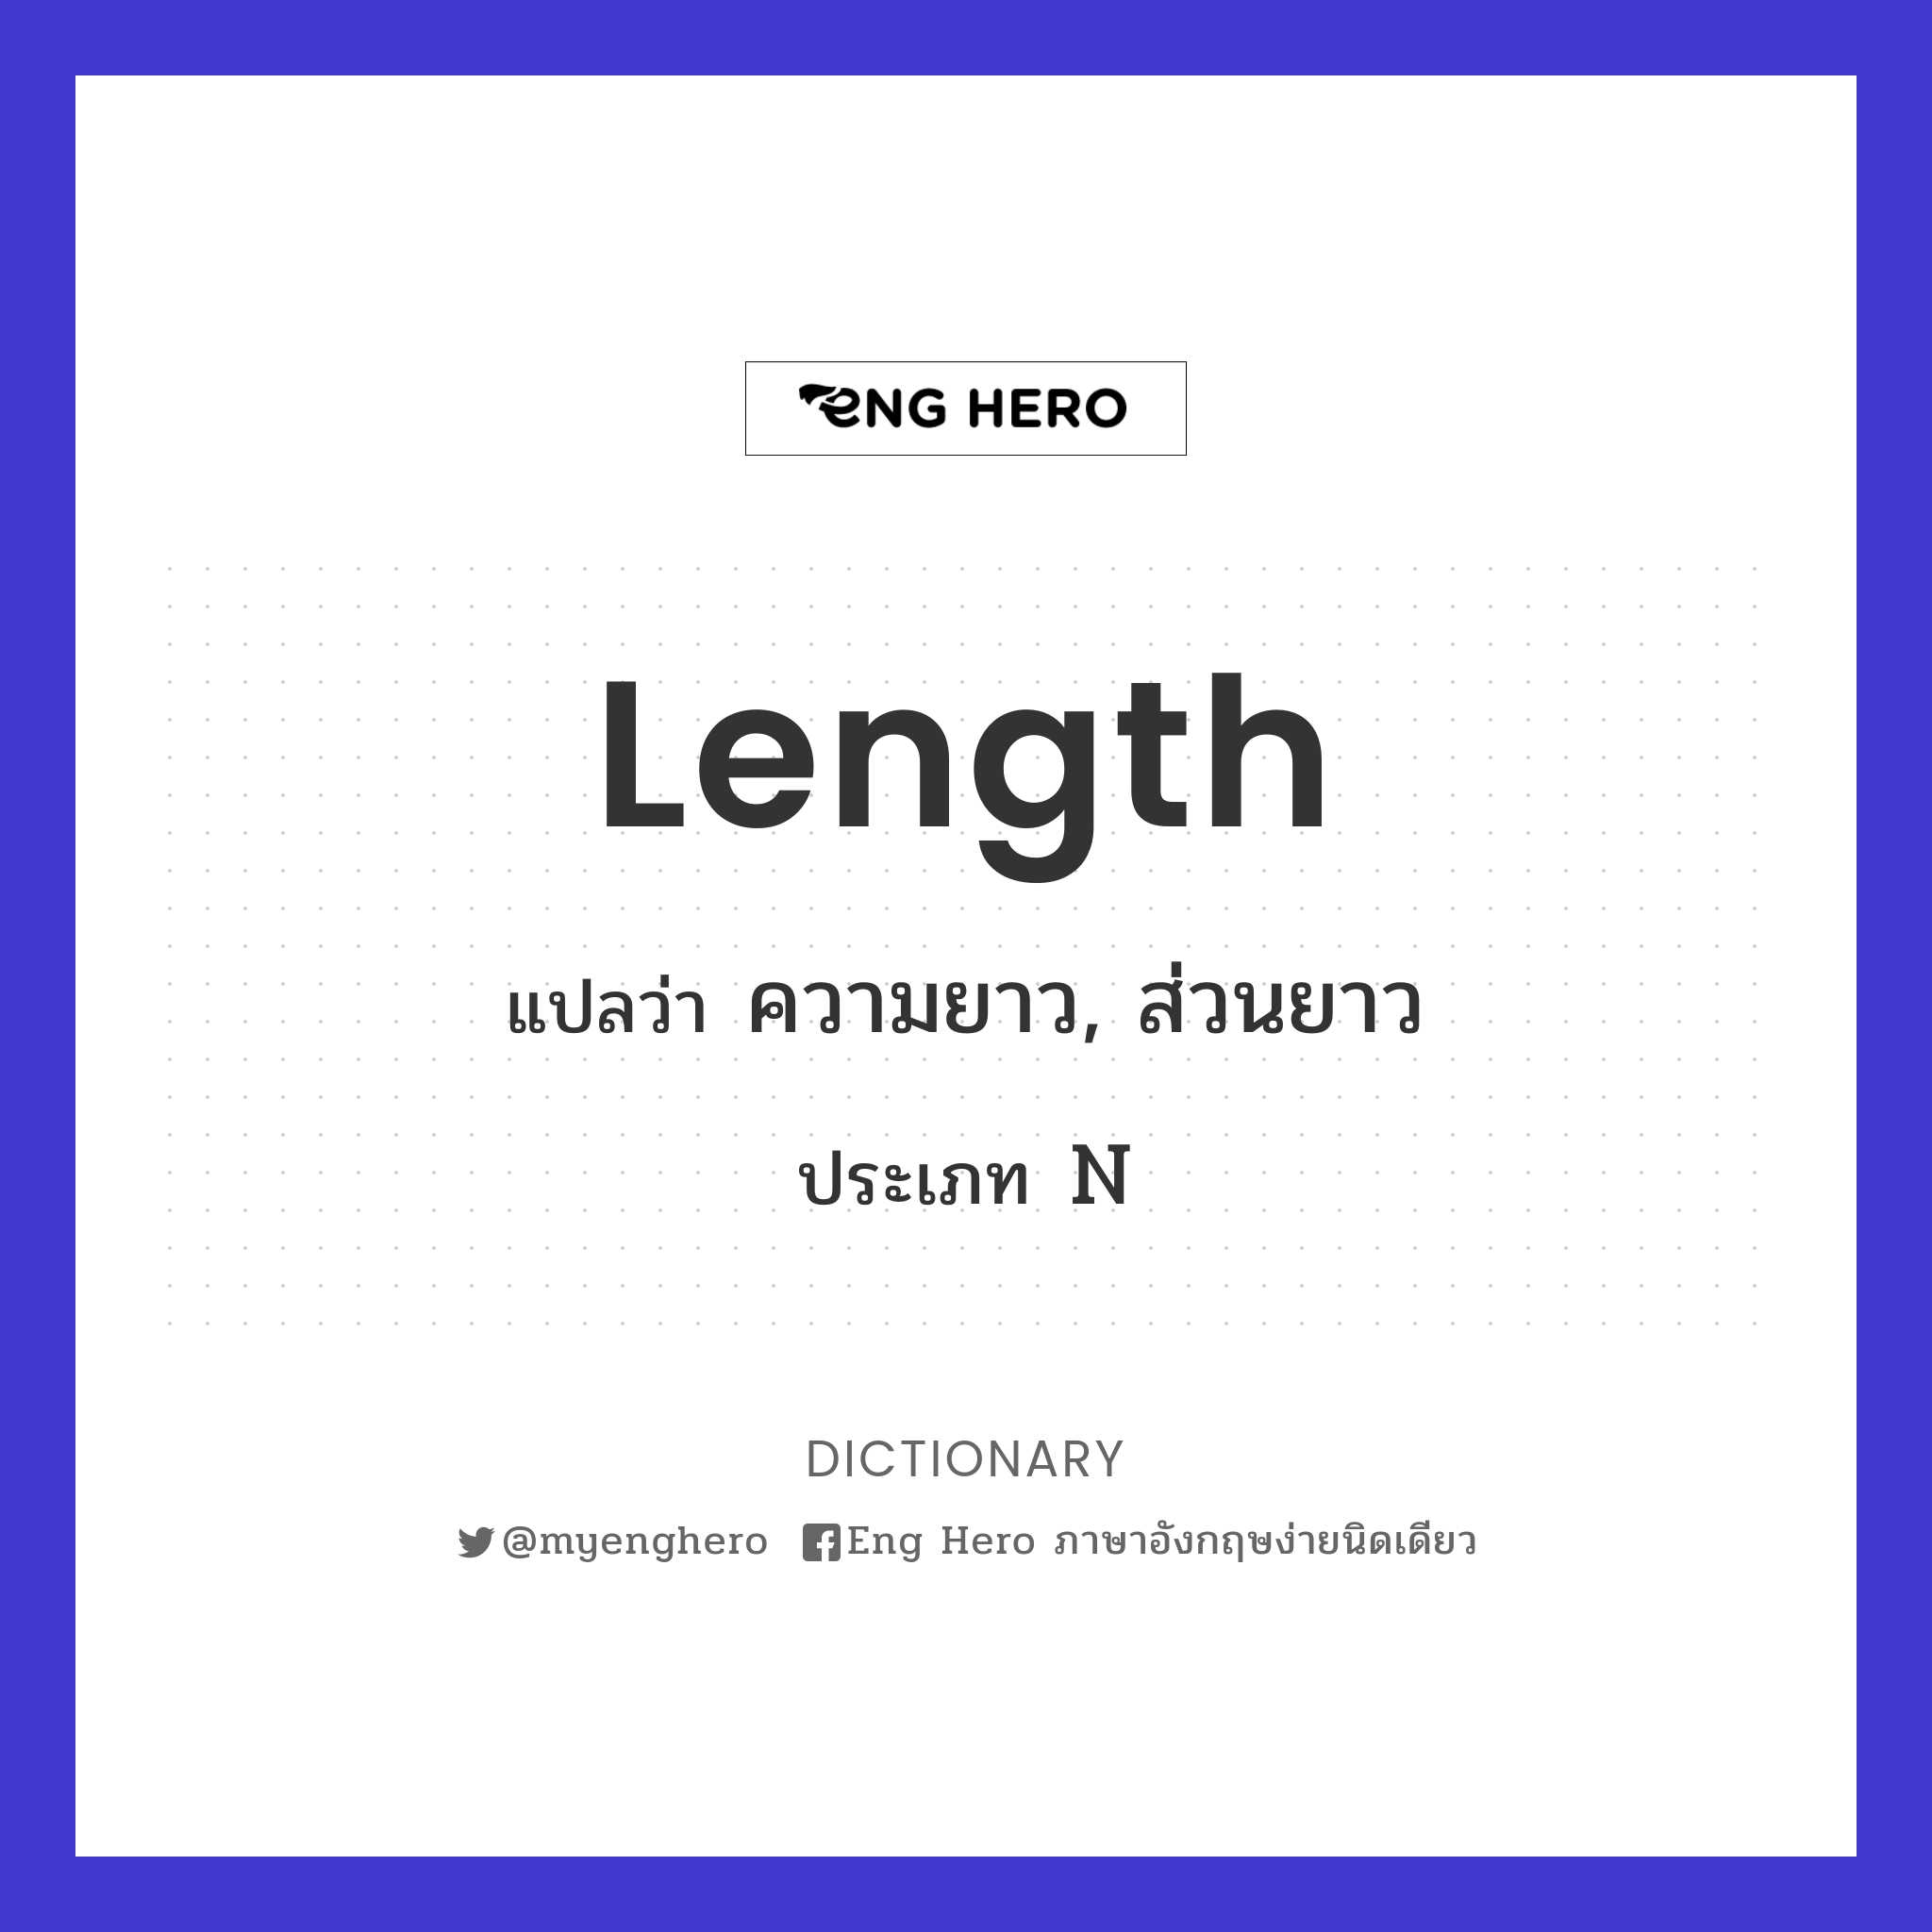 length